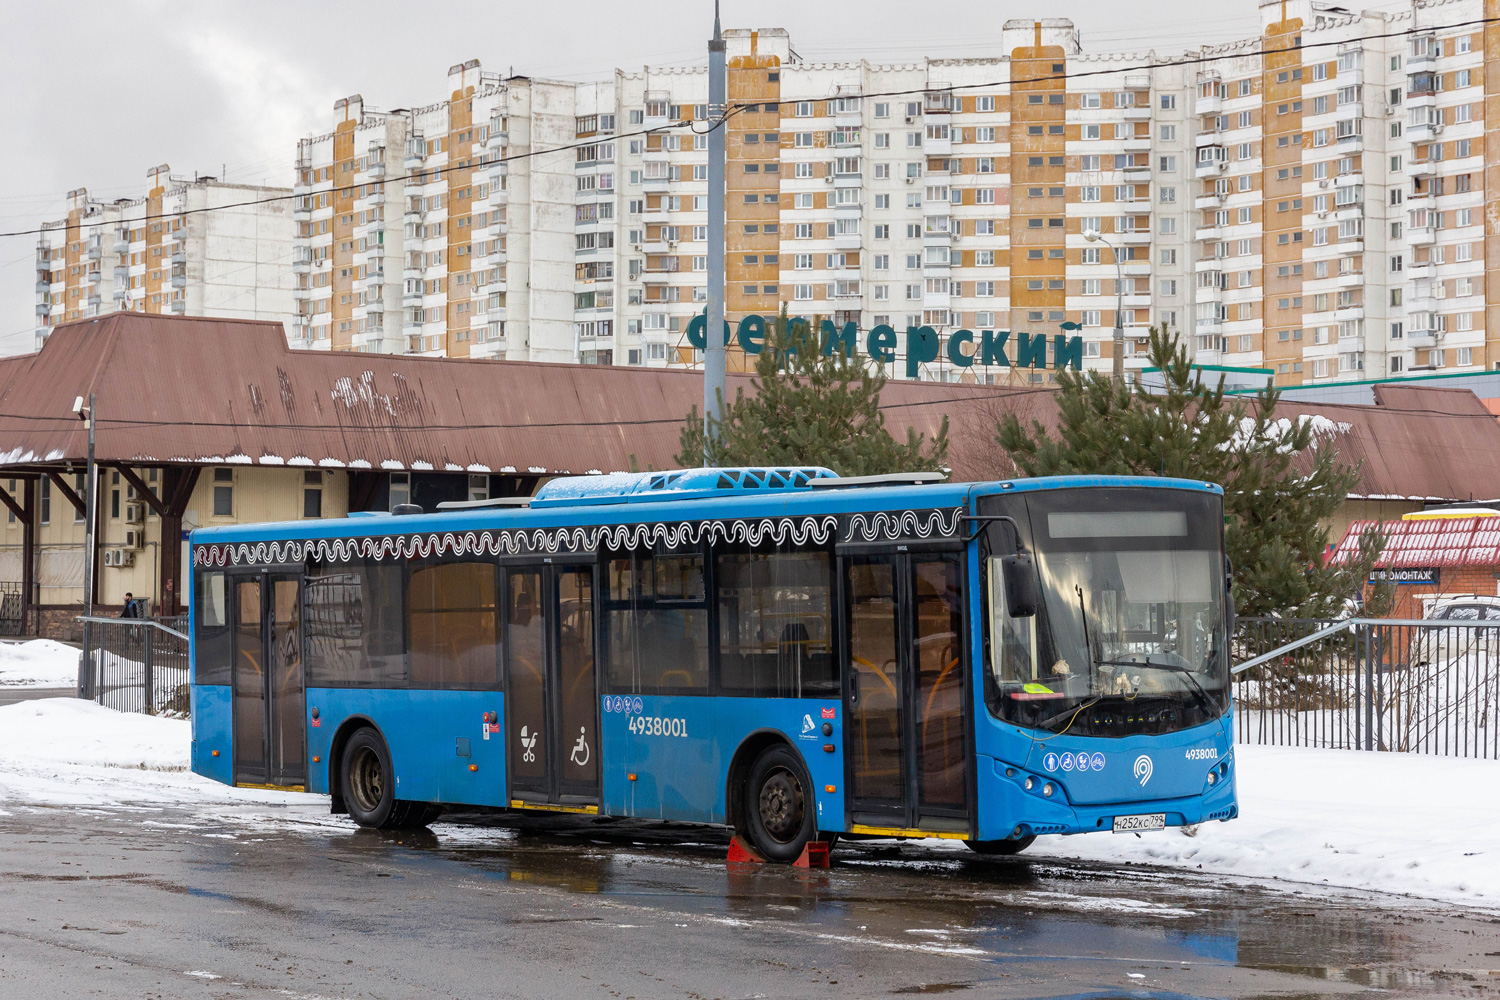 Moskwa, Volgabus-5270.02 Nr 4938001